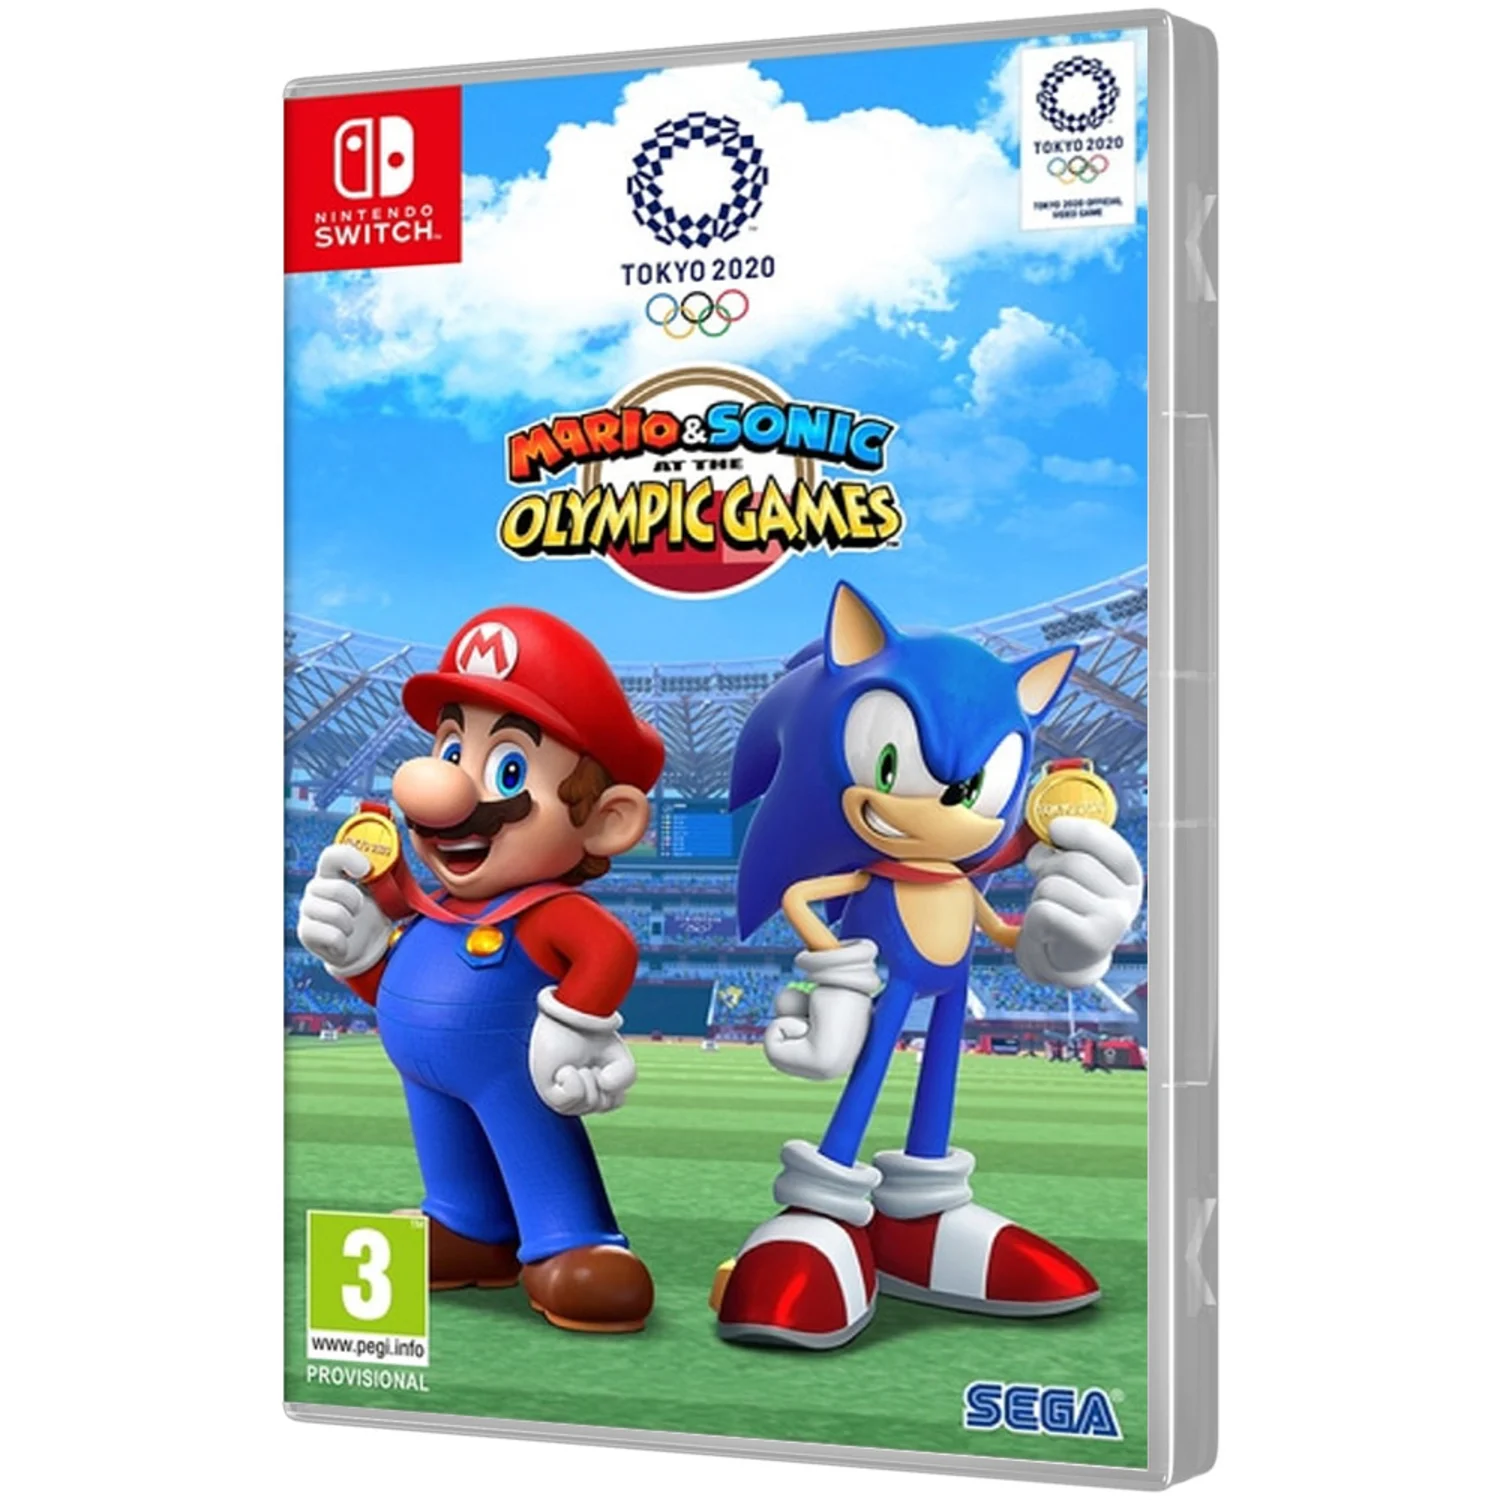 Jogo Sonic Superstars para PS4 no Paraguai - Atacado Games - Paraguay